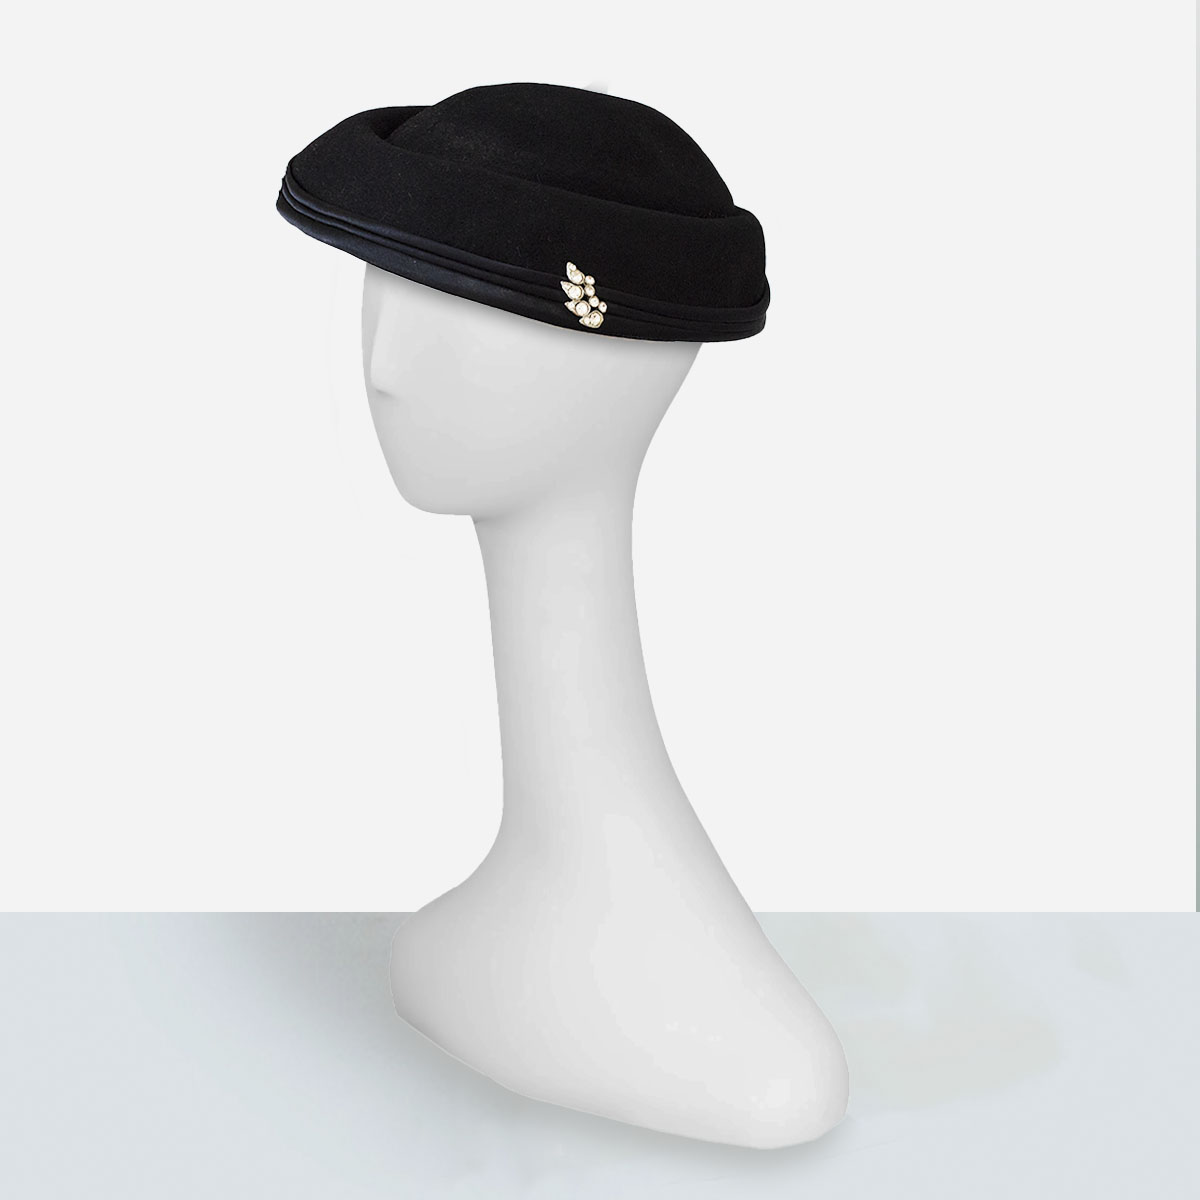 Black cocktail hat